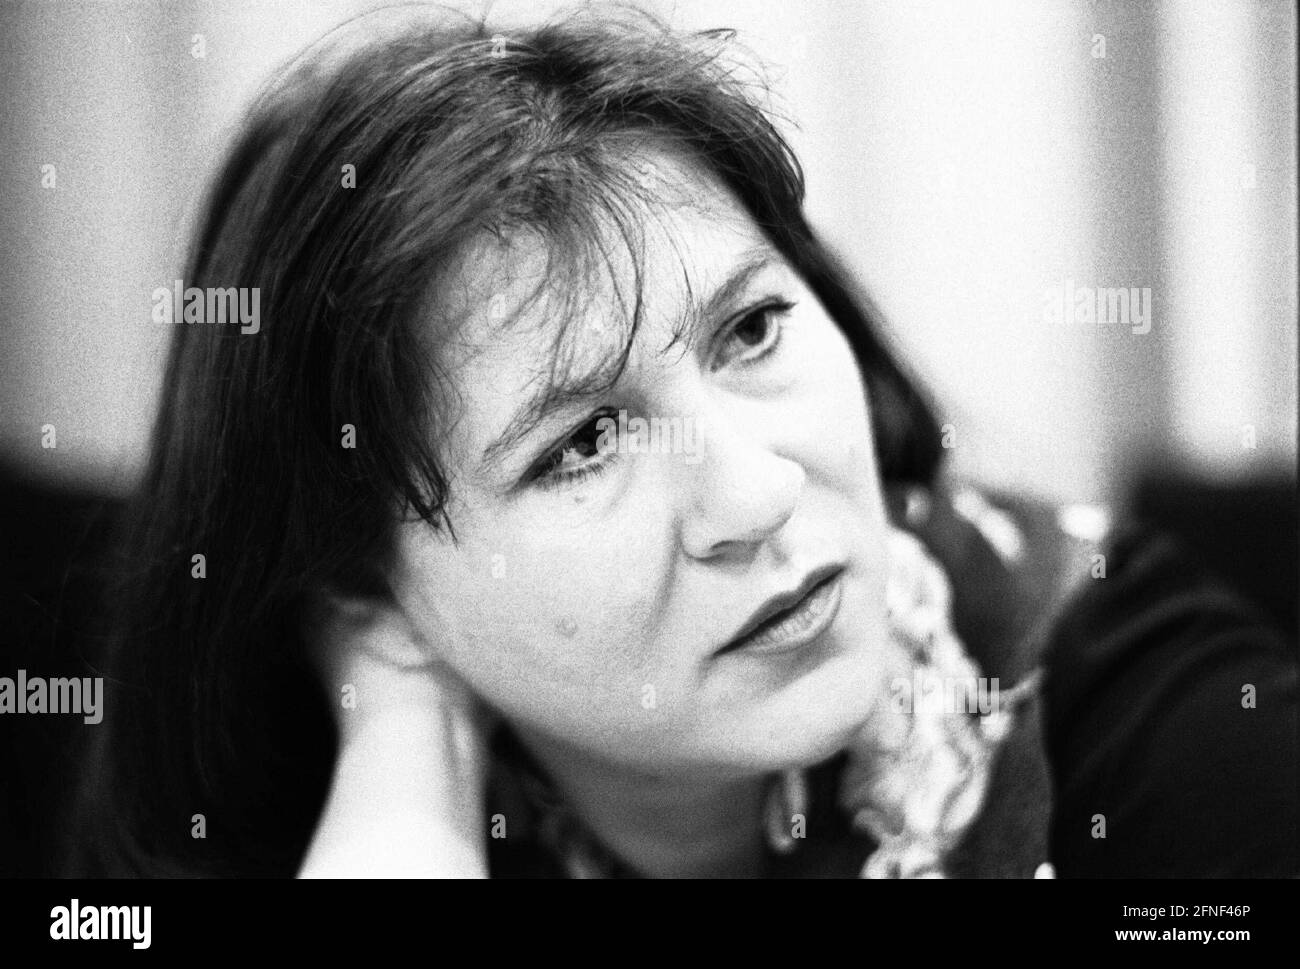 Eva Mattes (geboren 1954), deutsche Schauspielerin. Das Bild wurde während einer Lesung im Harenberg City Center, Dortmund, aufgenommen. [Automatisierte Übersetzung] Stockfoto